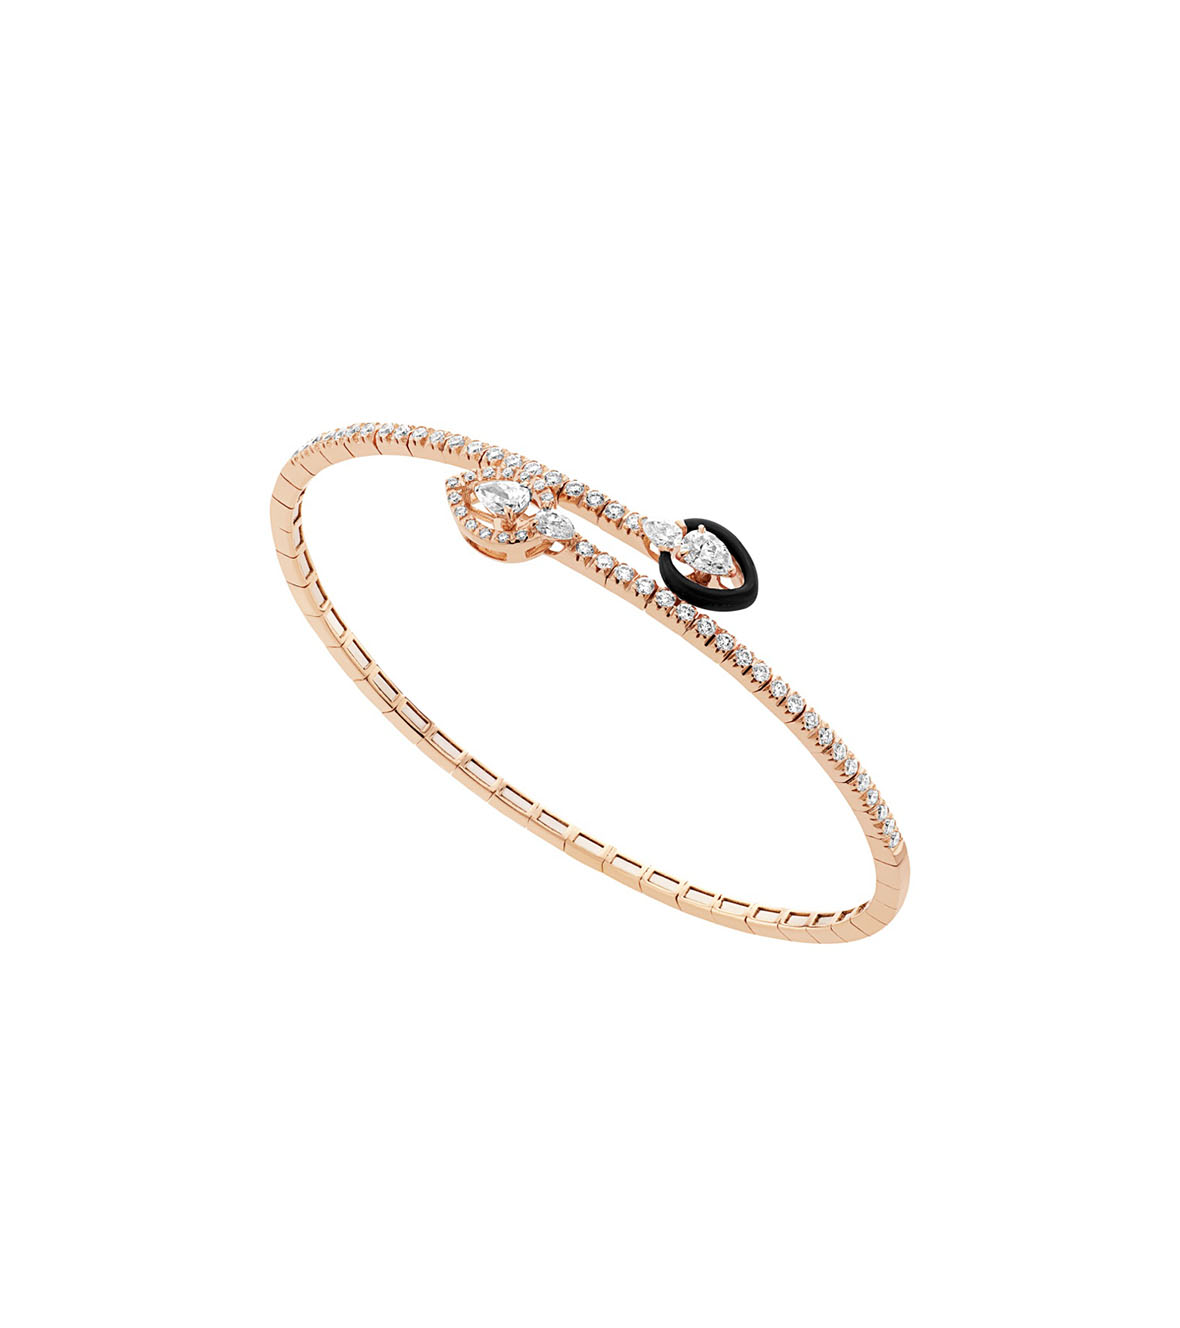 Pink Gold Bracelet with Diamonds and black Enamel BRX195BT-P-BKC16 by Casato 